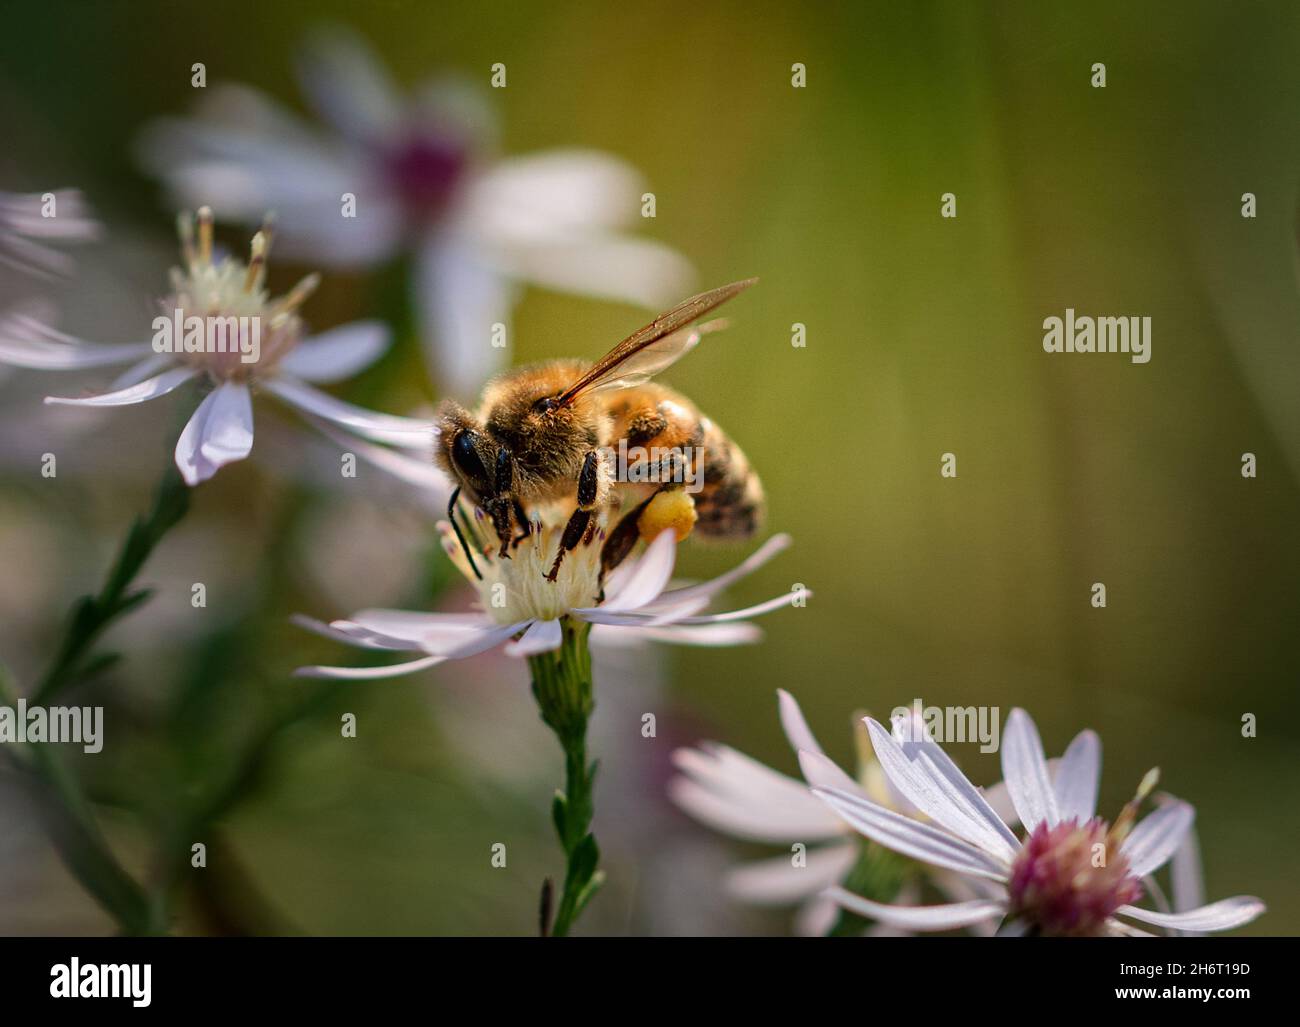 Gros plan d'une abeille rassemblant du pollen sur le dessus d'une fleur. Banque D'Images